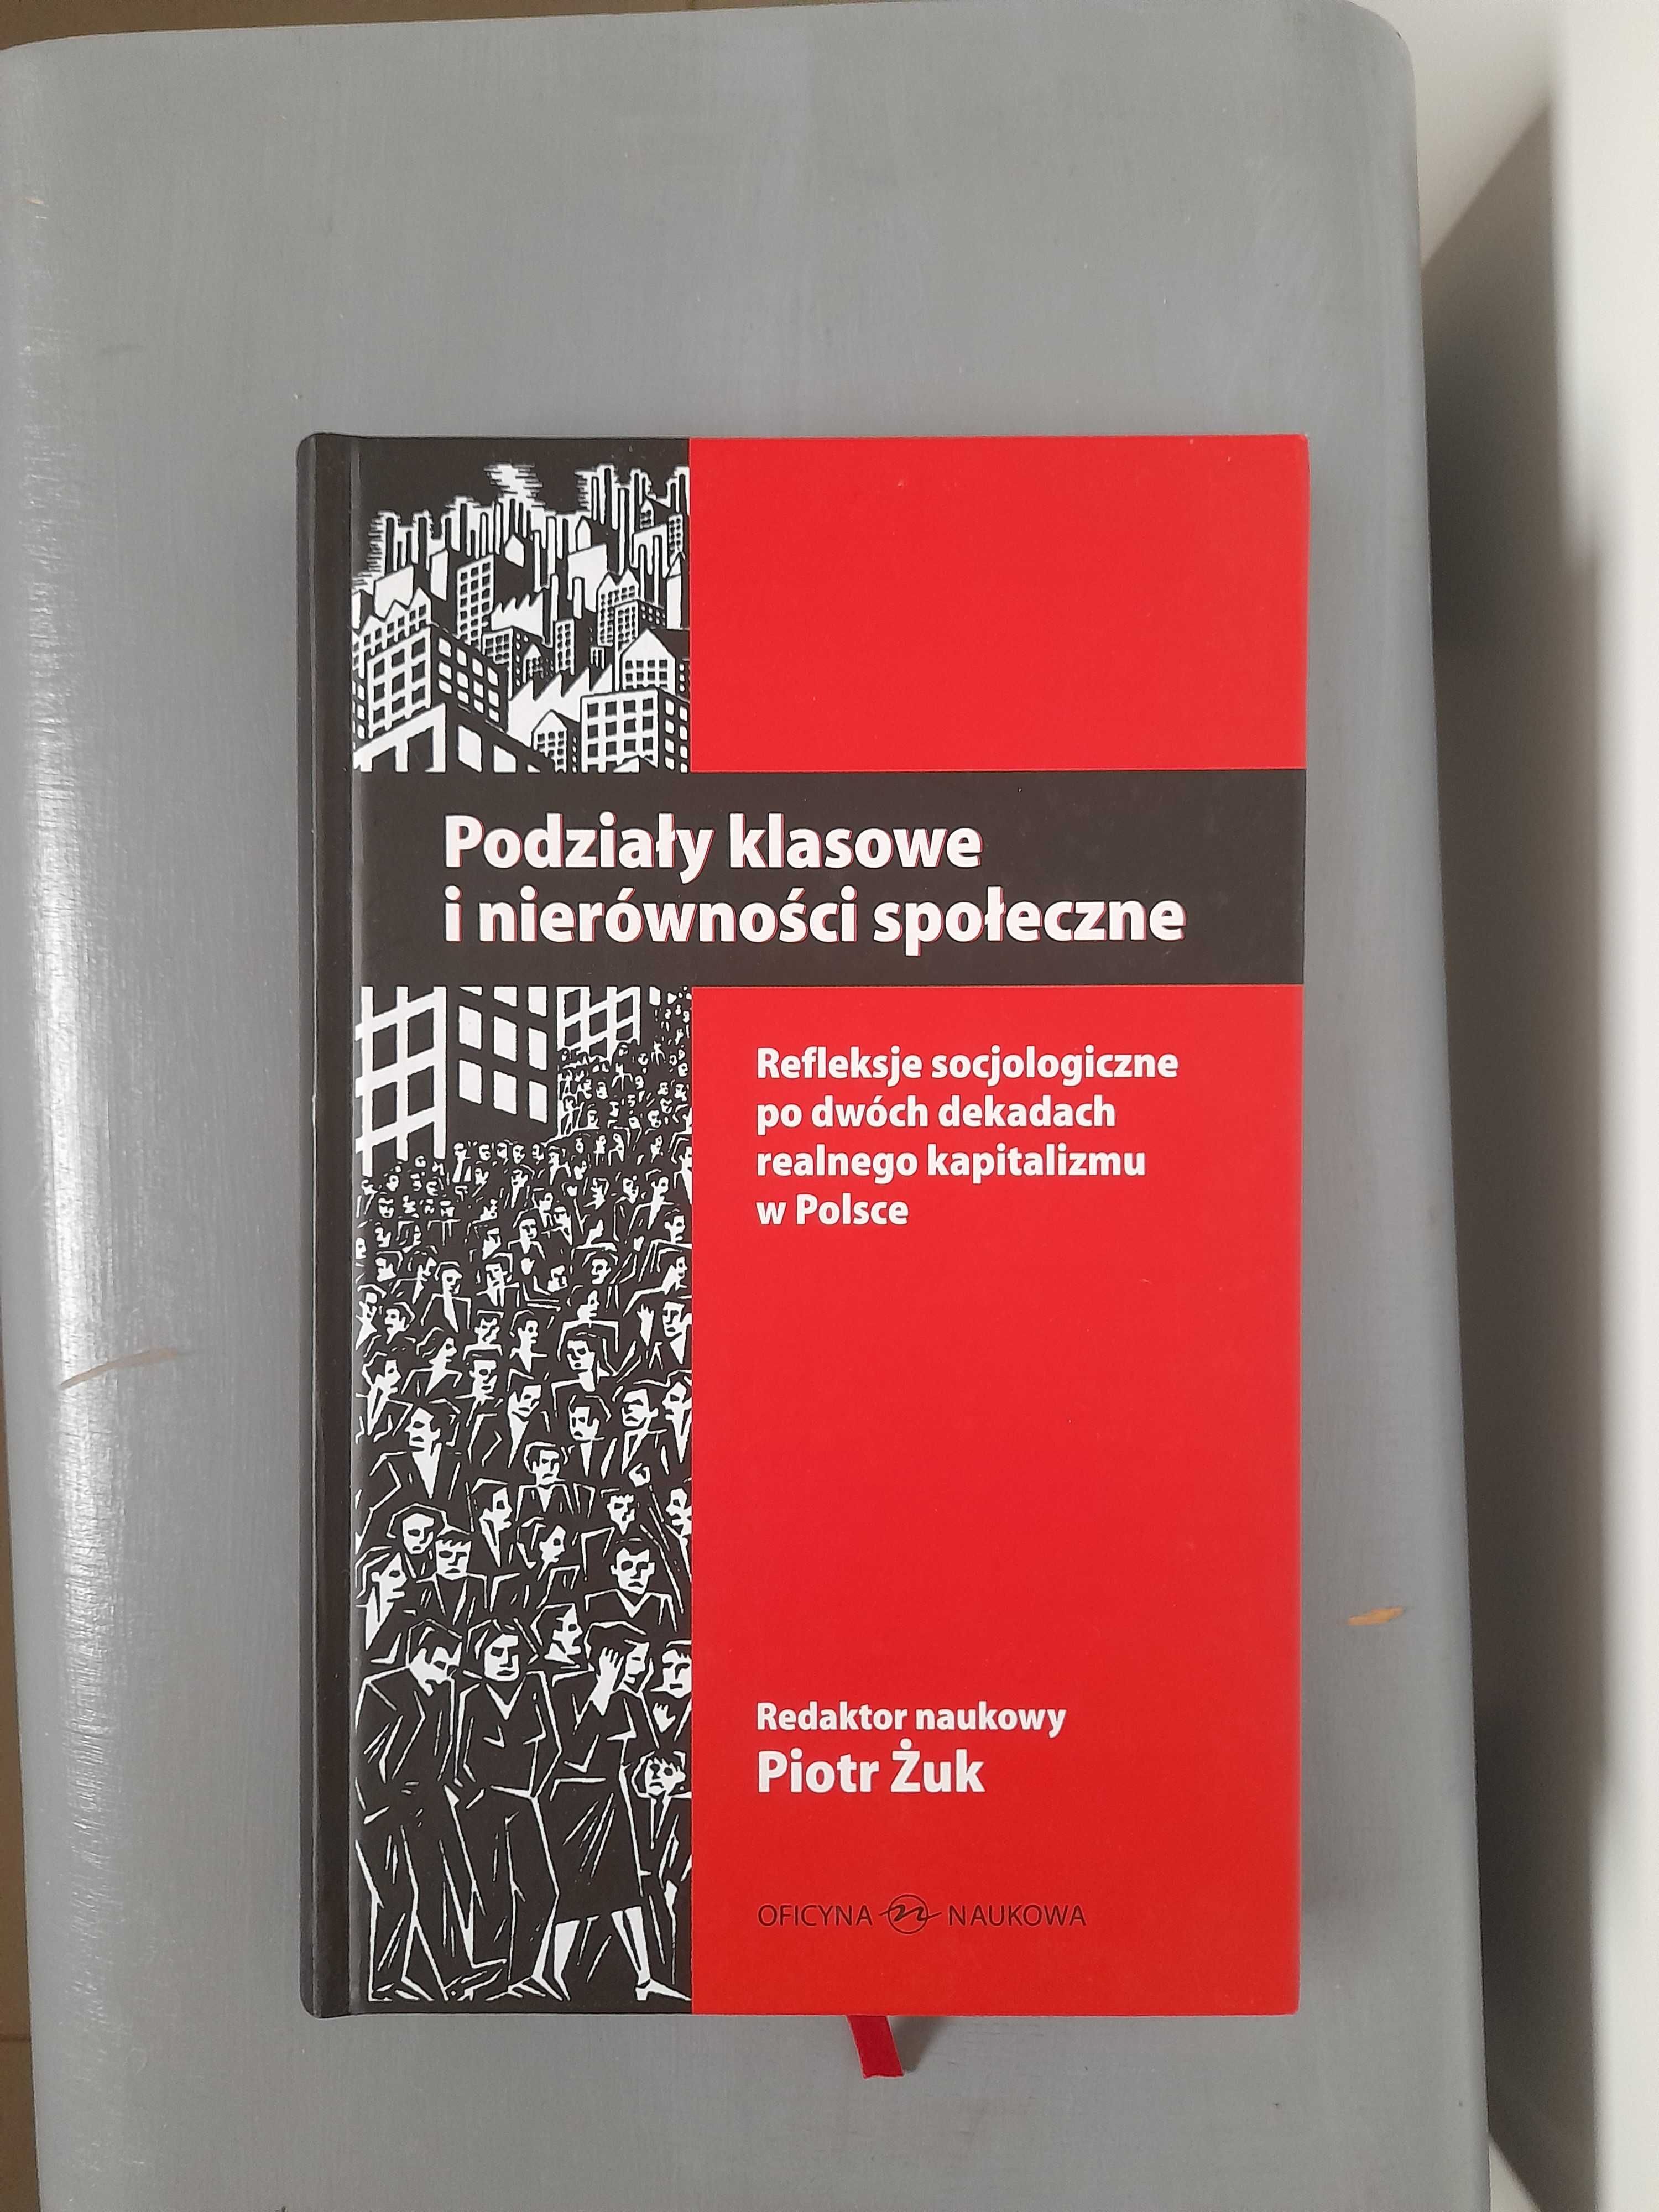 Piotr Żuk "Podziały klasowe i nierówności społeczne"